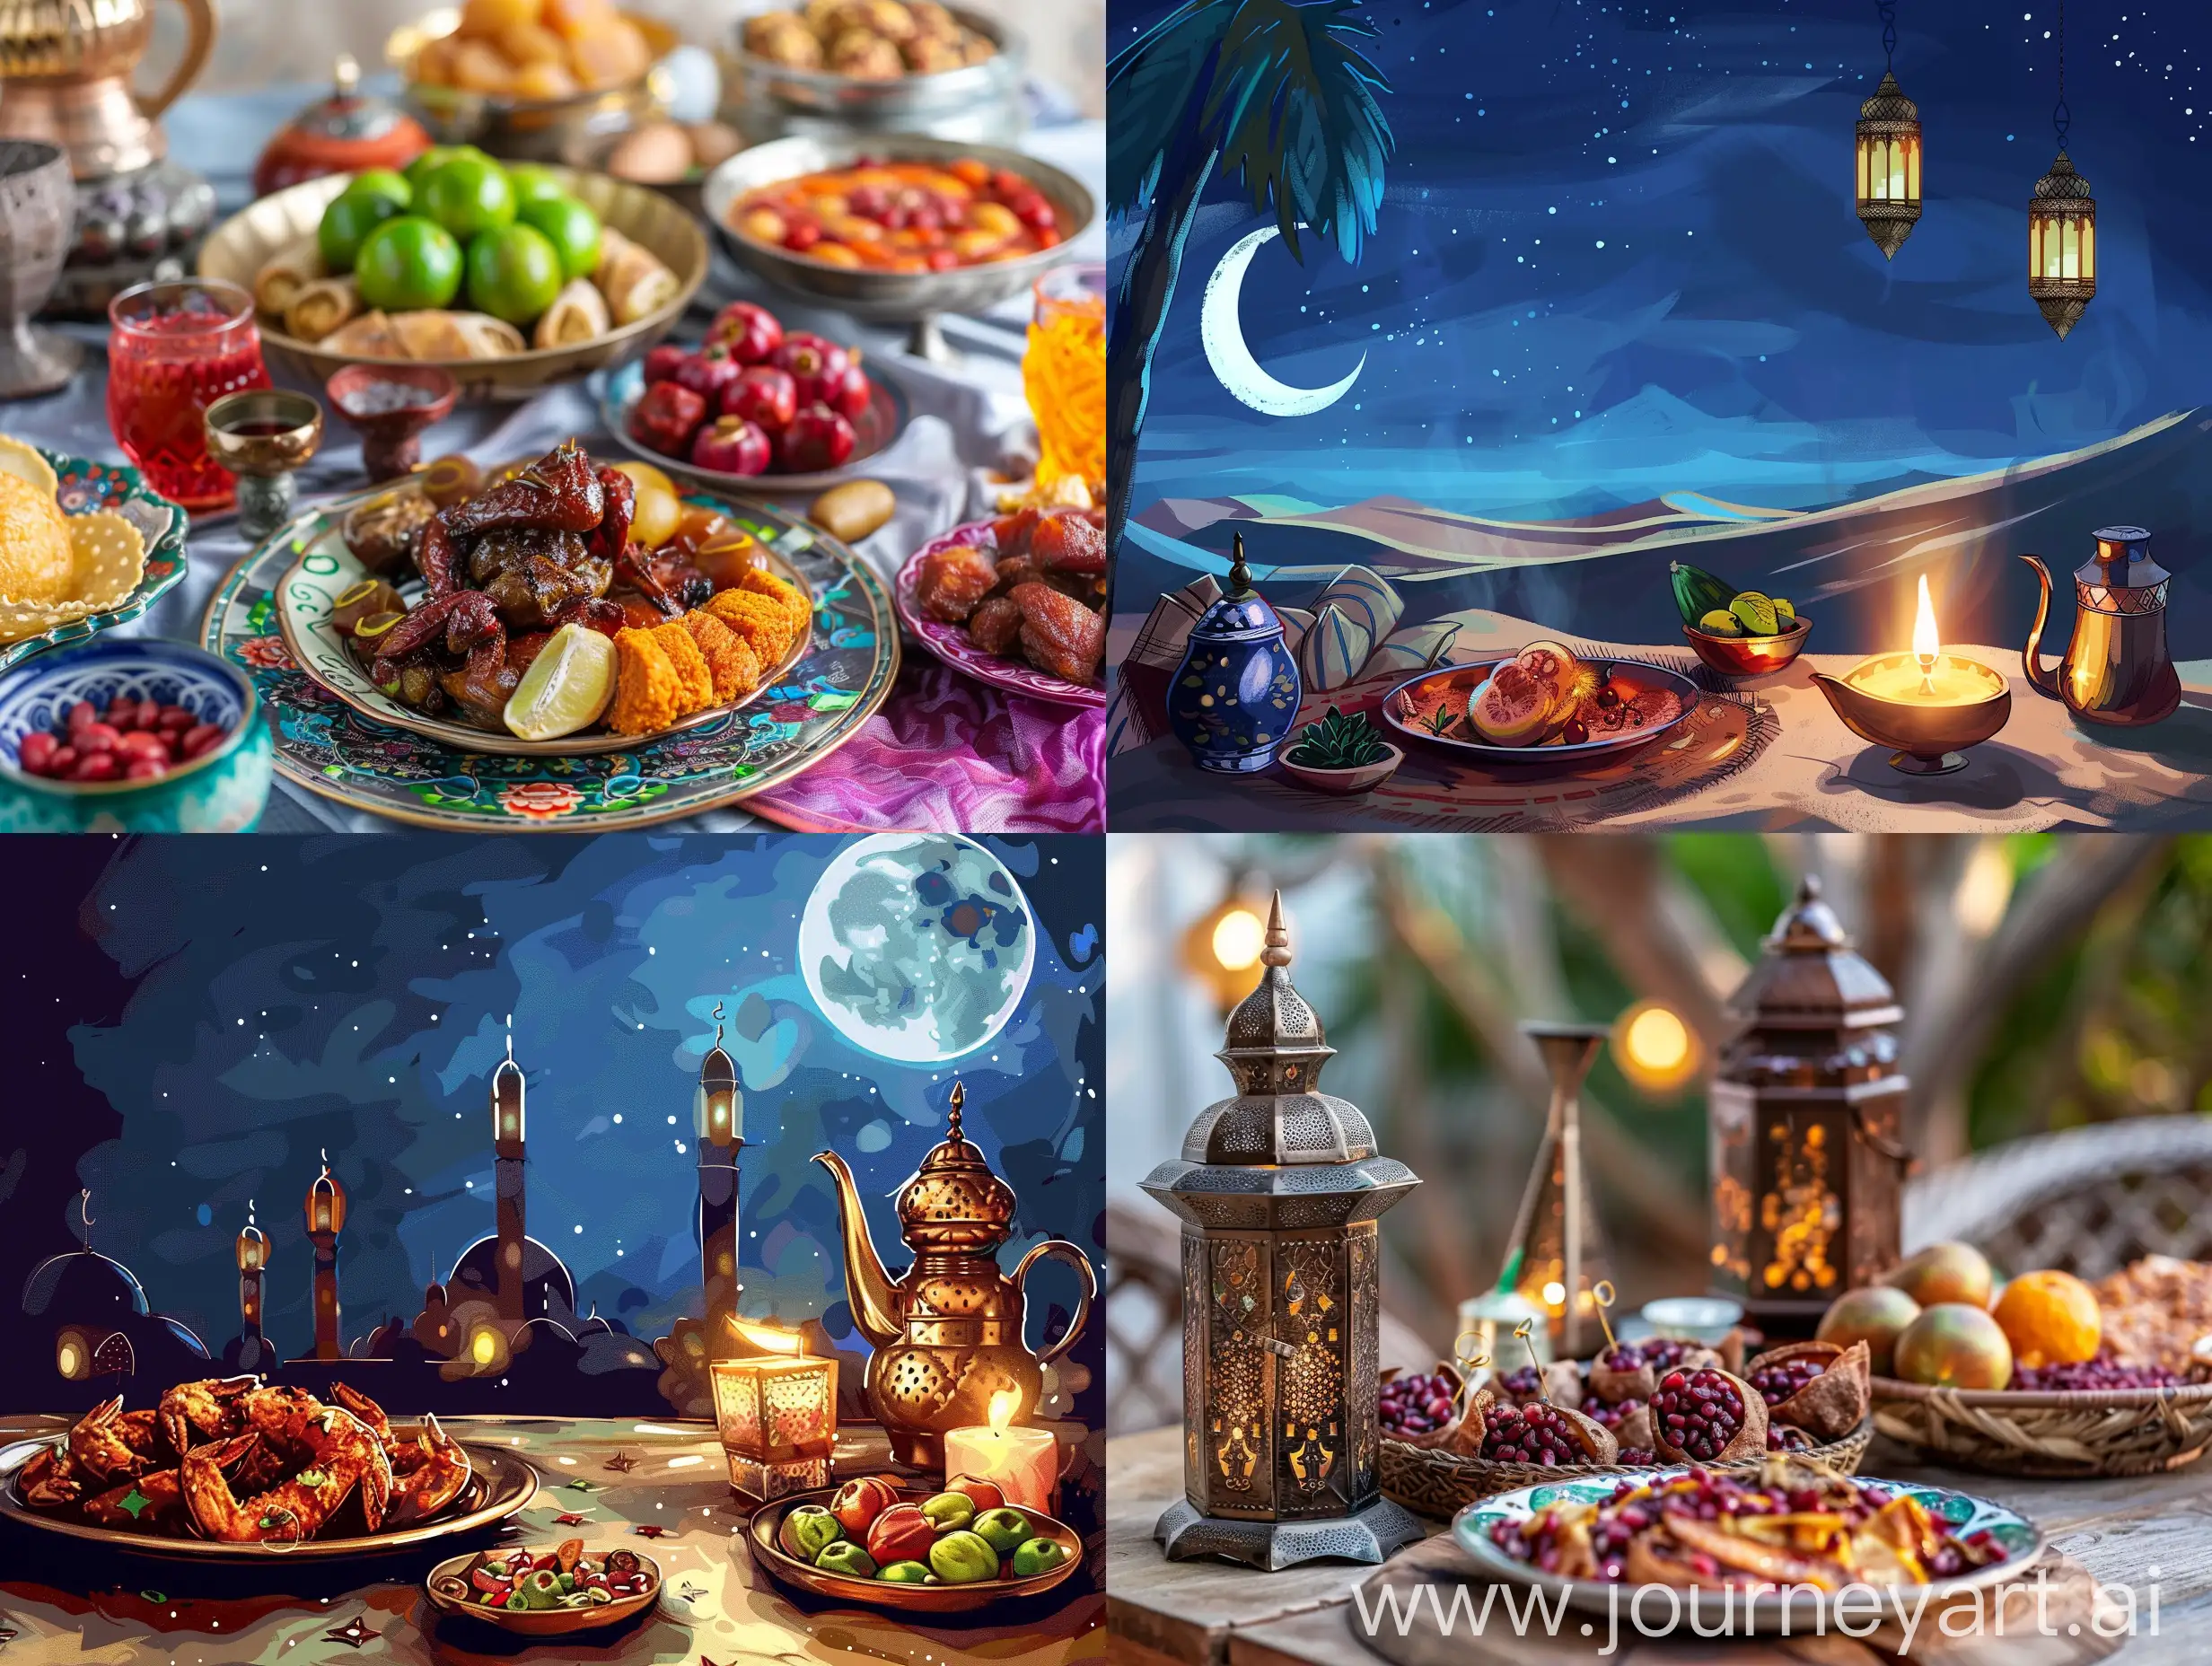 Ramadan mubarek